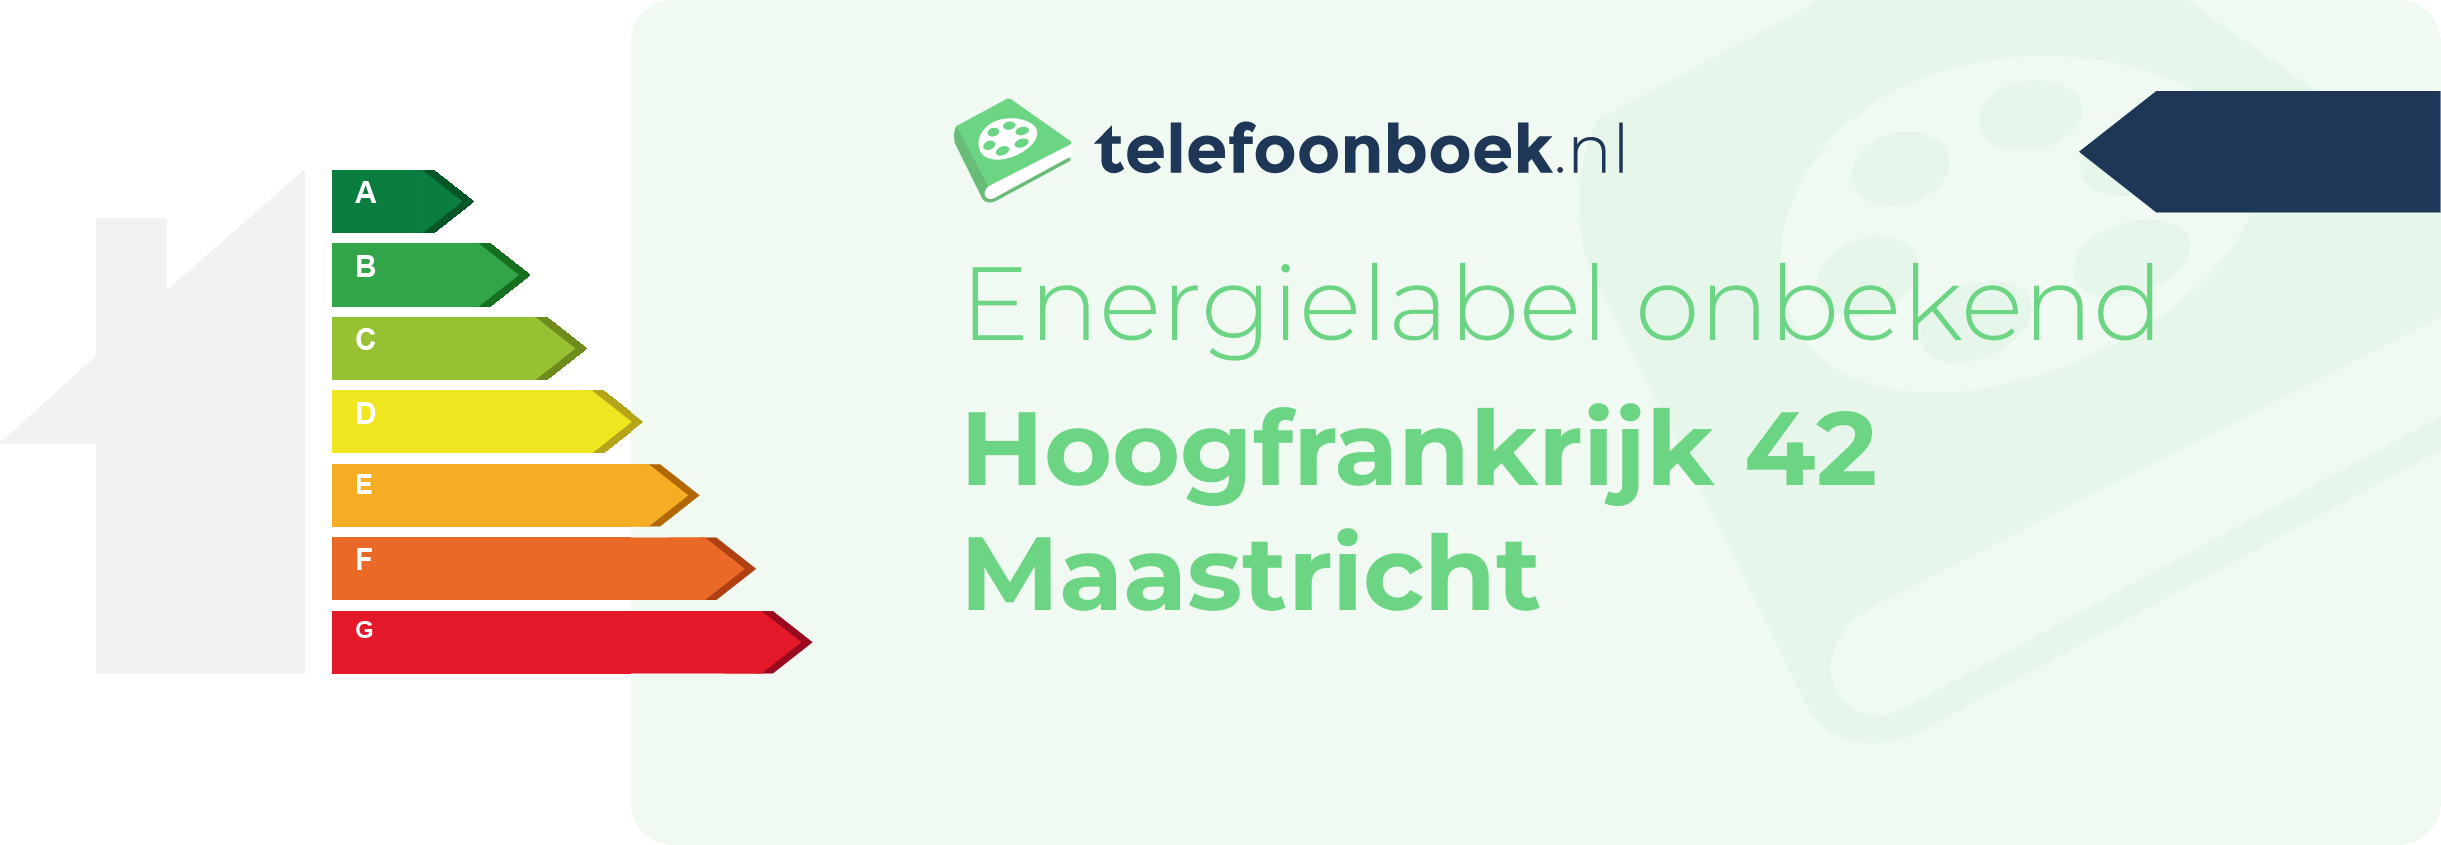 Energielabel Hoogfrankrijk 42 Maastricht